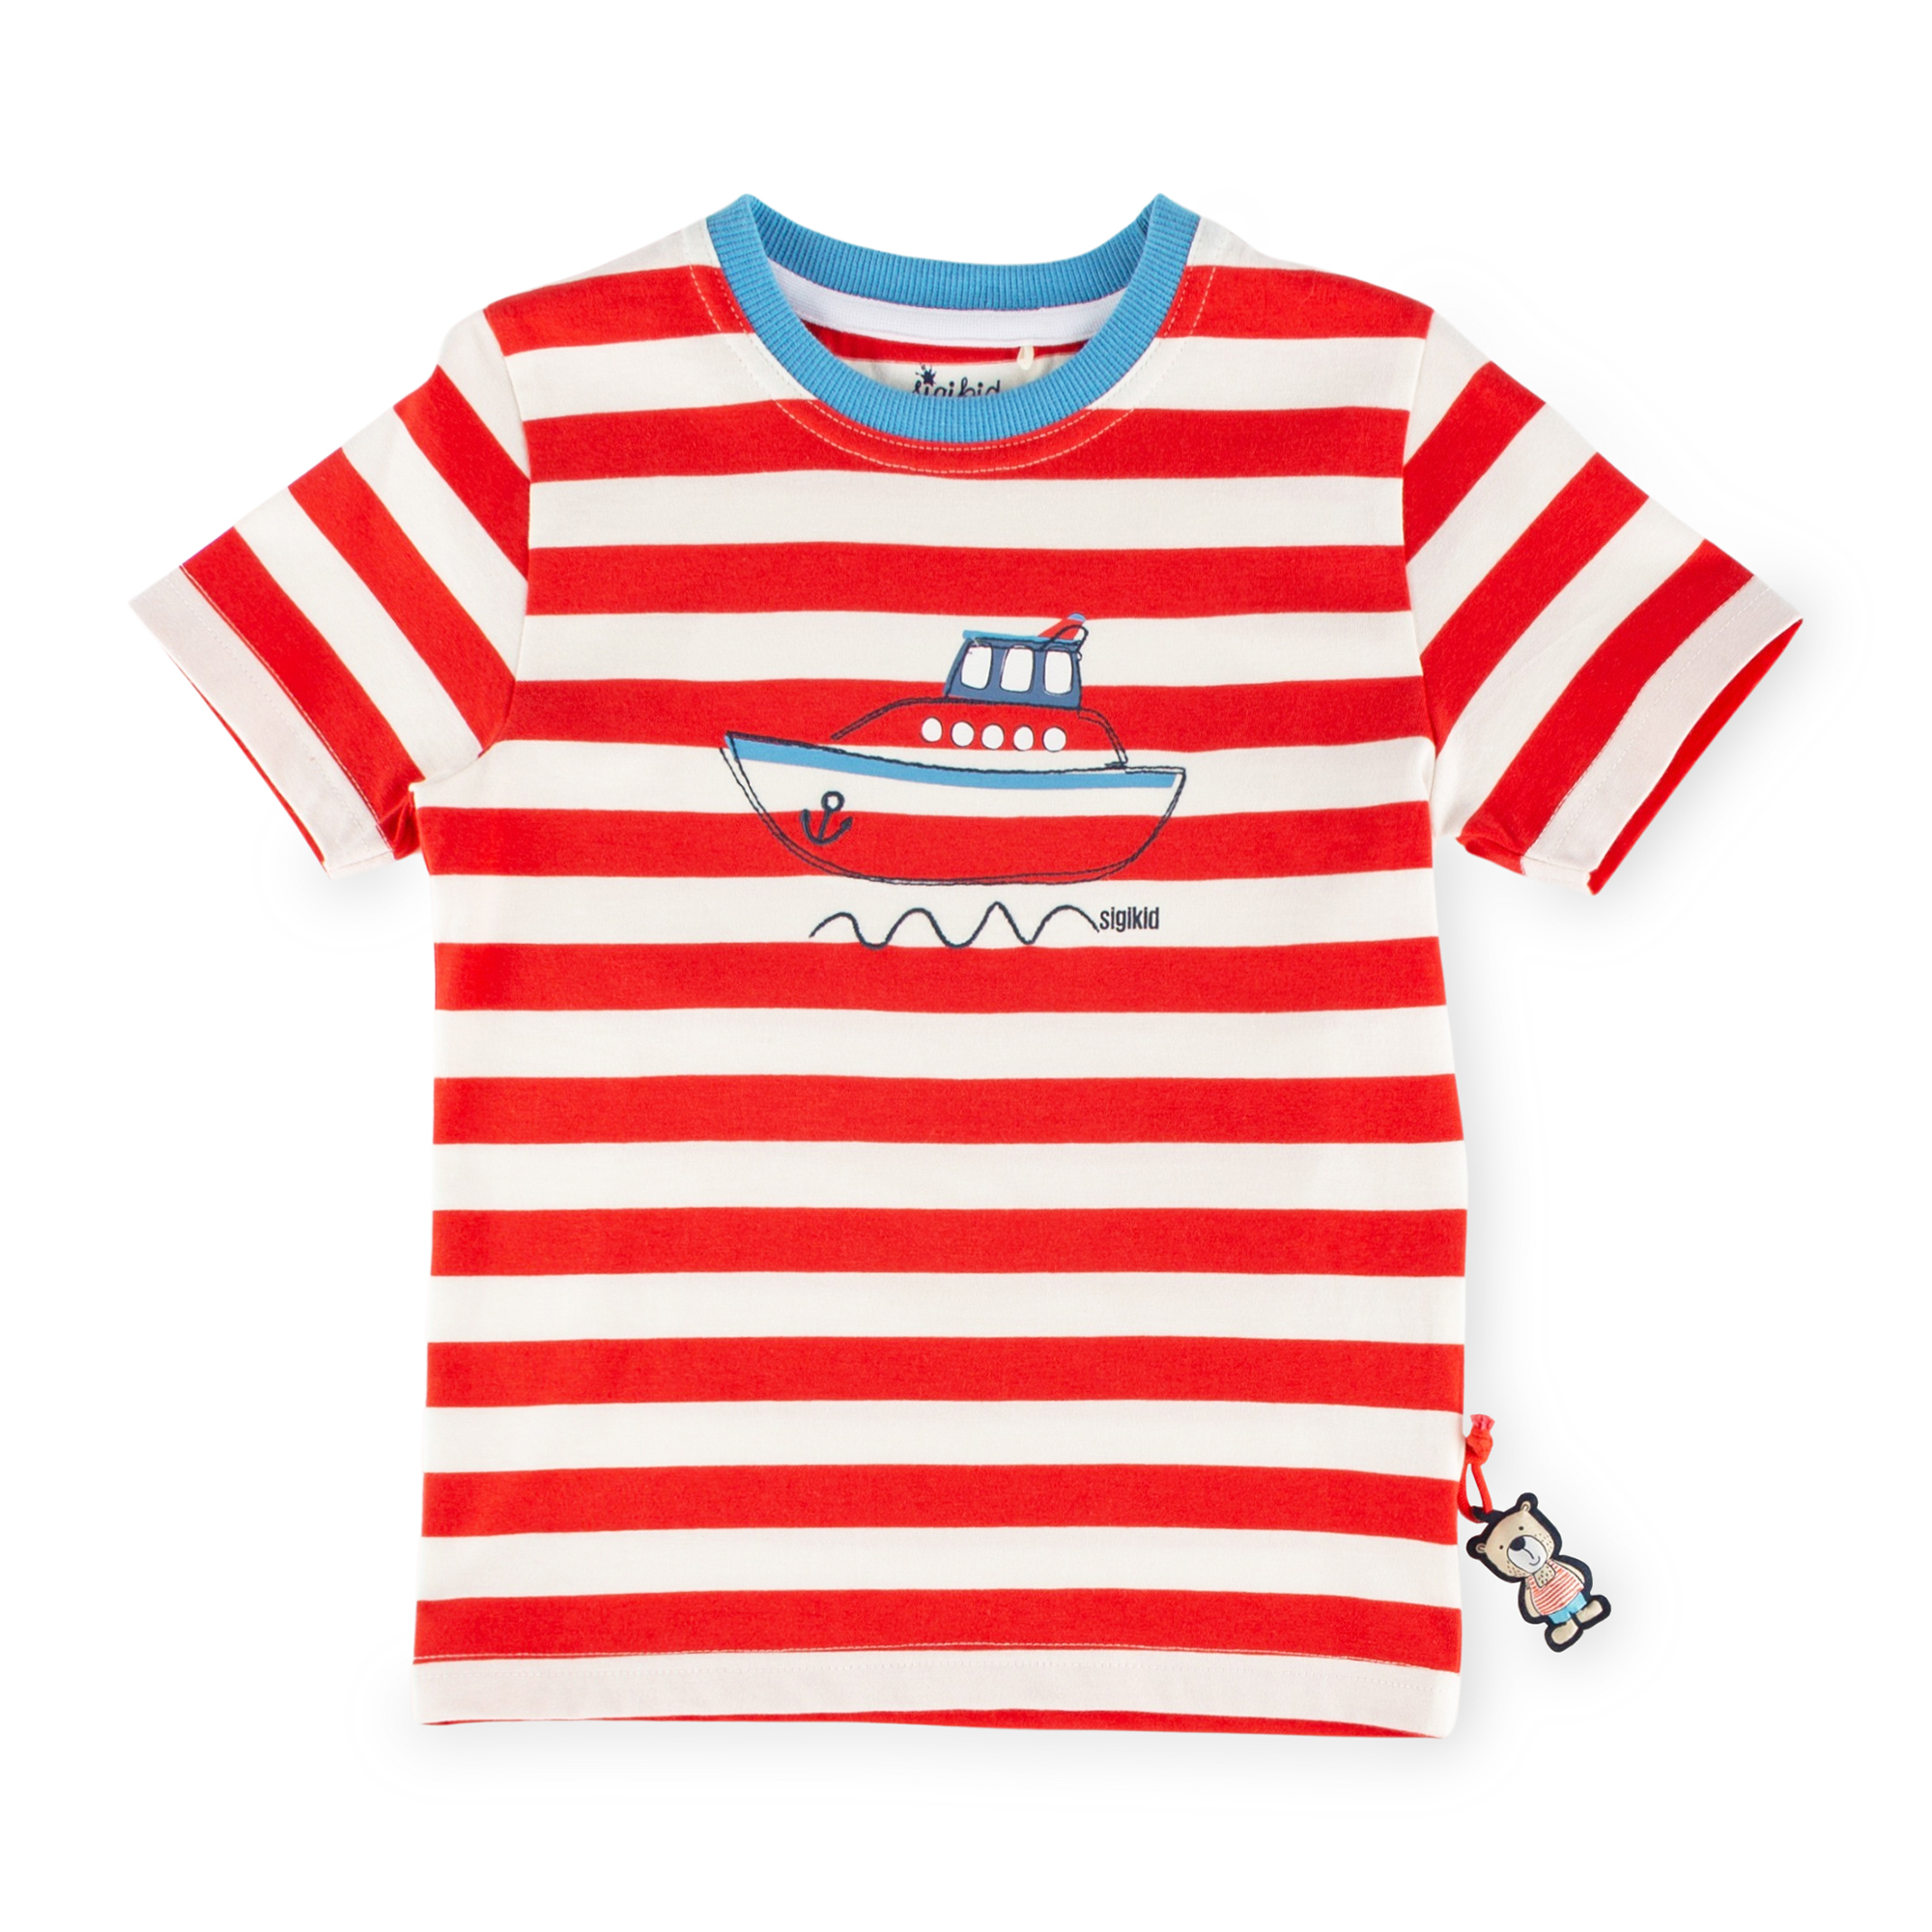 Kinder T-Shirt mit Boot Motiv, rot-weiß gestreift